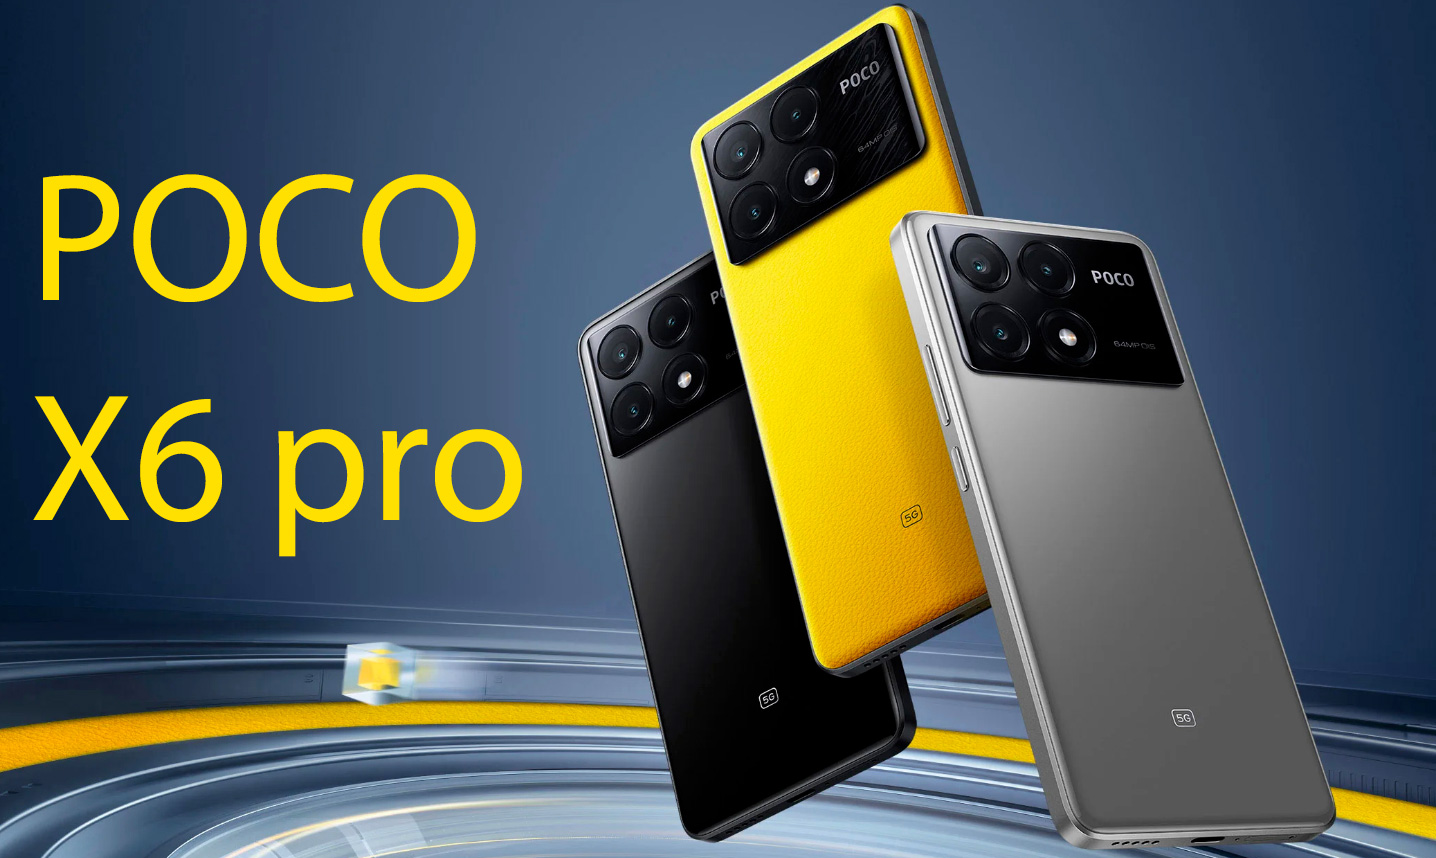 بررسی گوشی موبایل Poco x6 pro